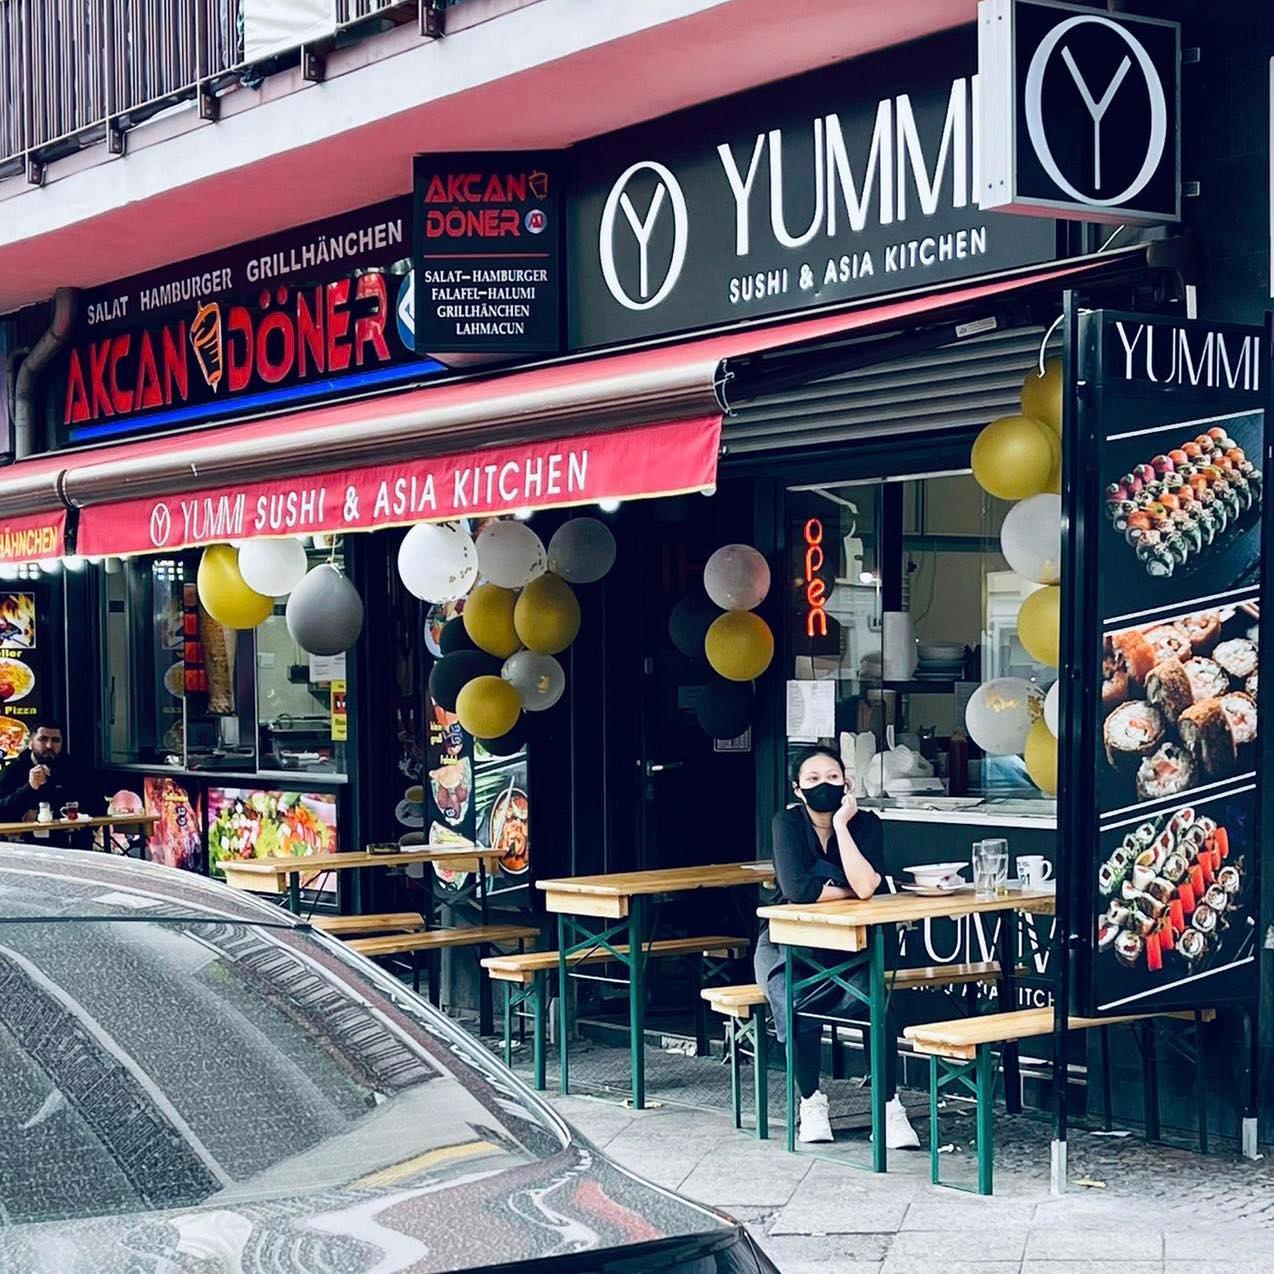 Restaurant "Yummi Sushi & Asia Kitchen" in Berlin